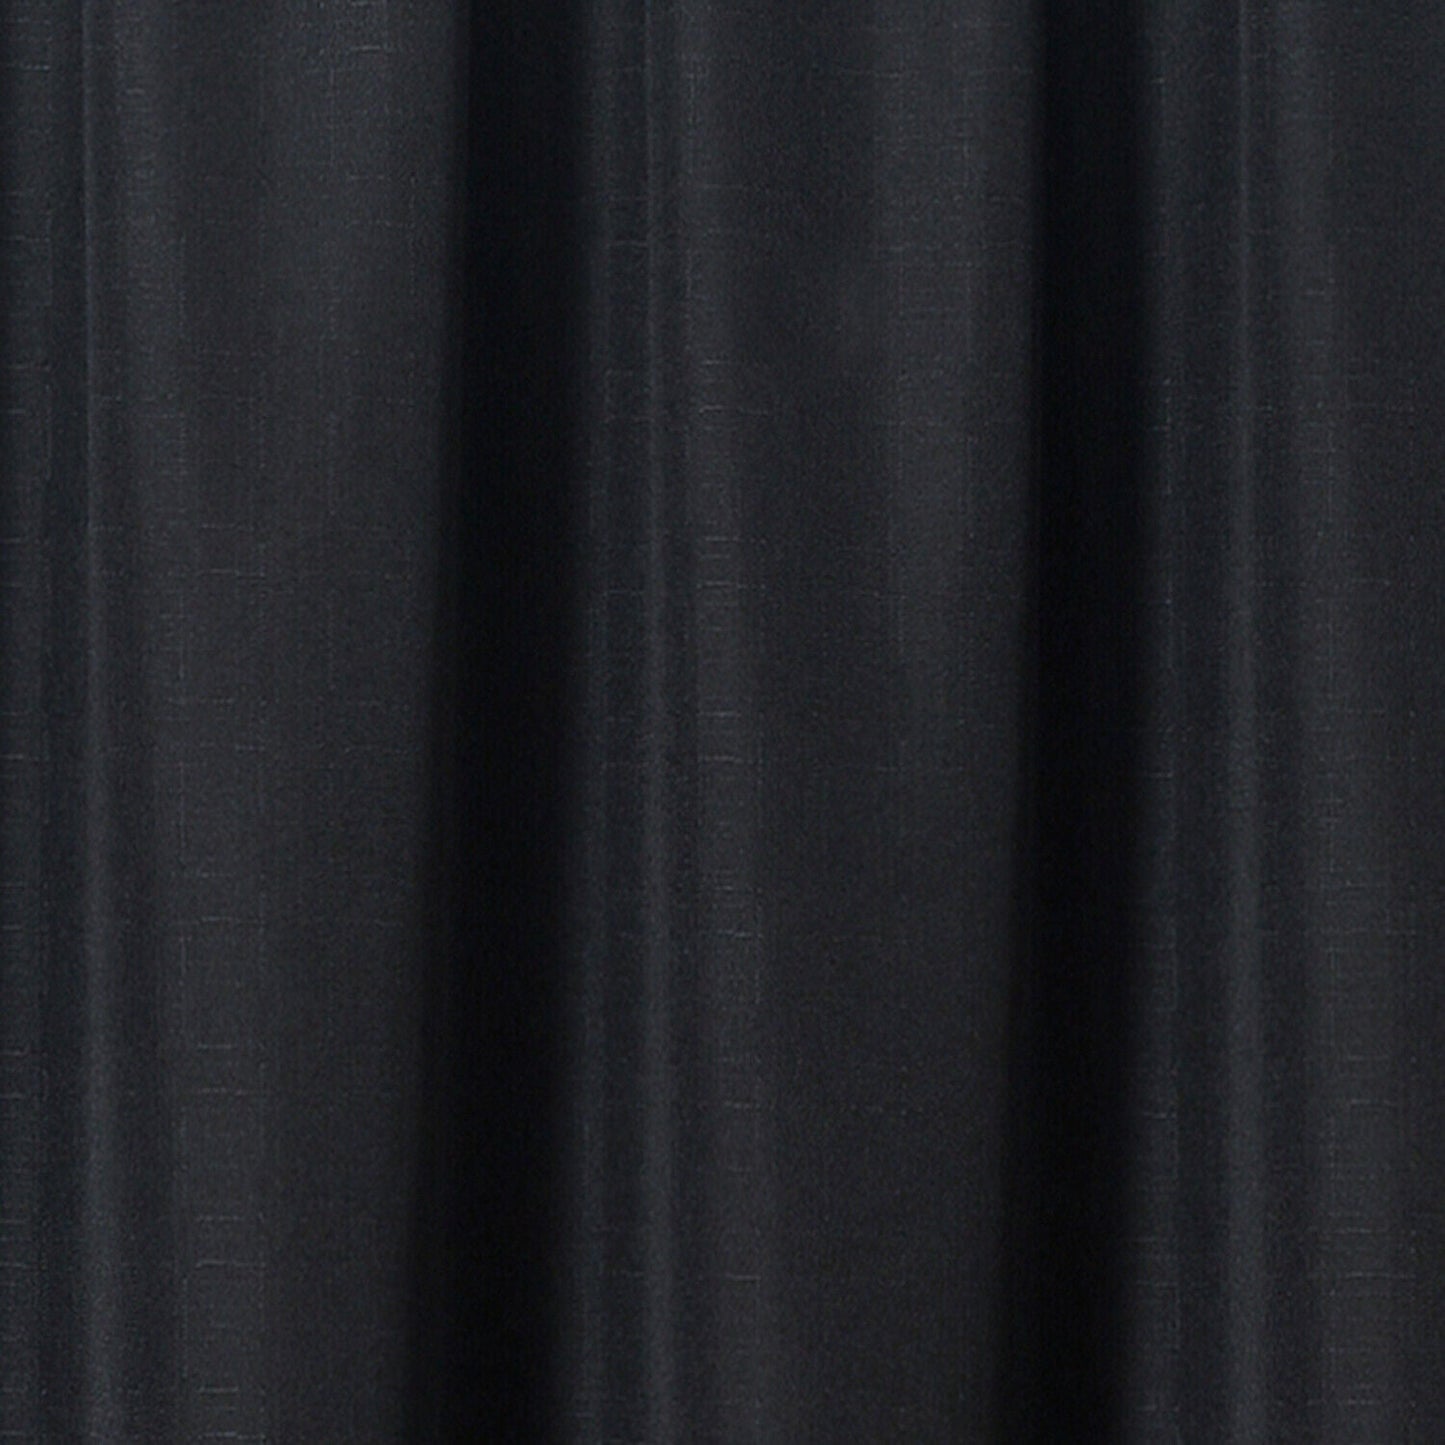 Linen Look Voile 59" x 90" Black Window Curtain Drapes Textured Plain Slot Top